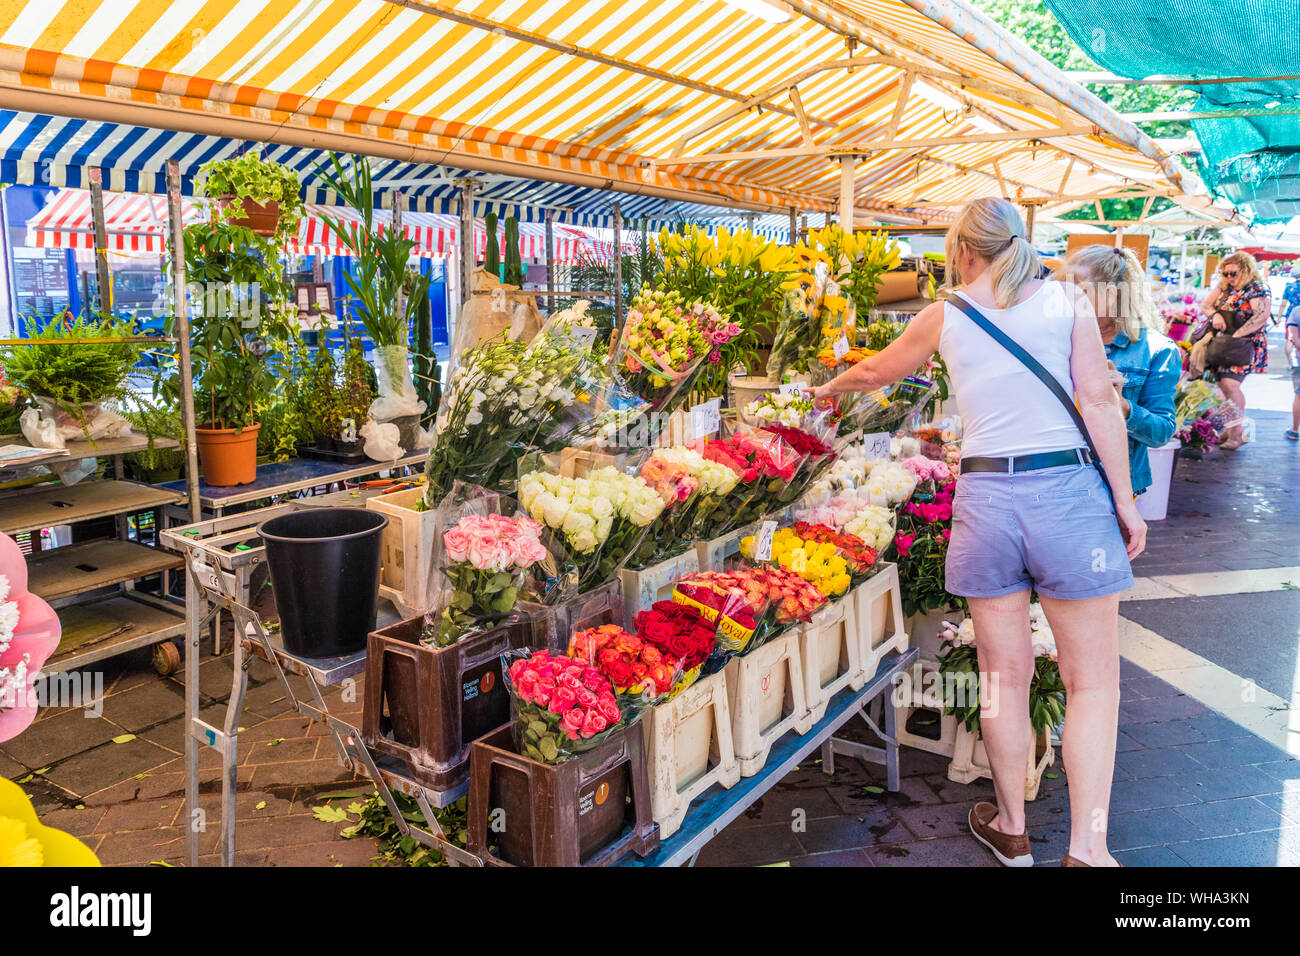 Le marché aux fleurs Cours Saleya Marché, Vieille Ville , Nice, Alpes Maritimes, Côte d'Azur, French Riviera, Provence, France, Europe, Méditerranée Banque D'Images